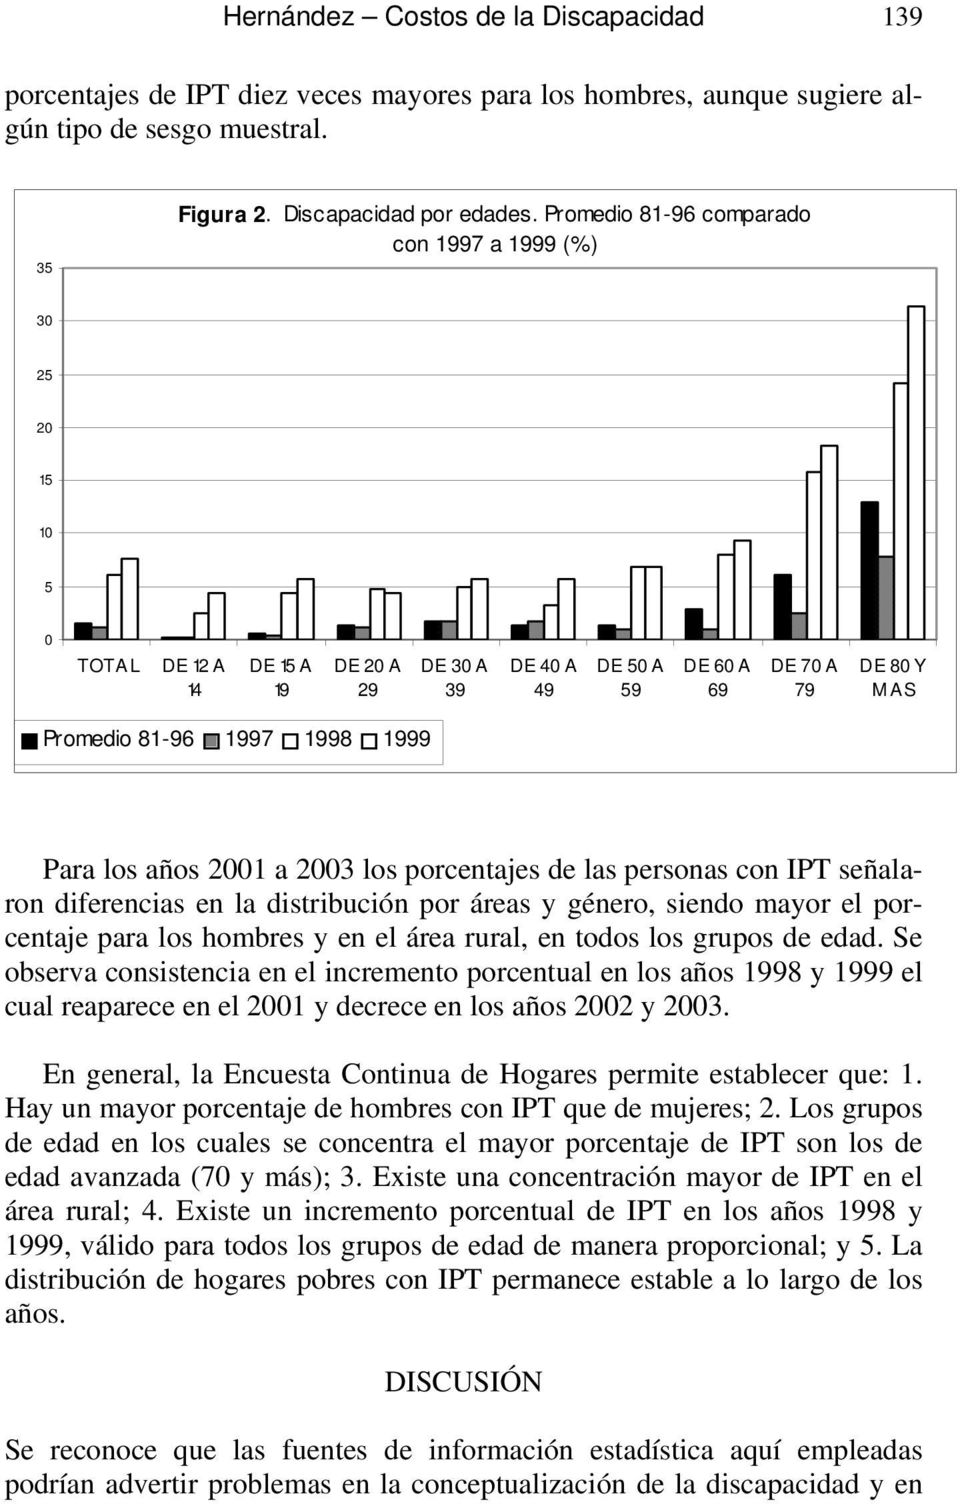 Para los años 2001 a 2003 los porcentajes de las personas con IPT señalaron diferencias en la distribución por áreas y género, siendo mayor el porcentaje para los hombres y en el área rural, en todos